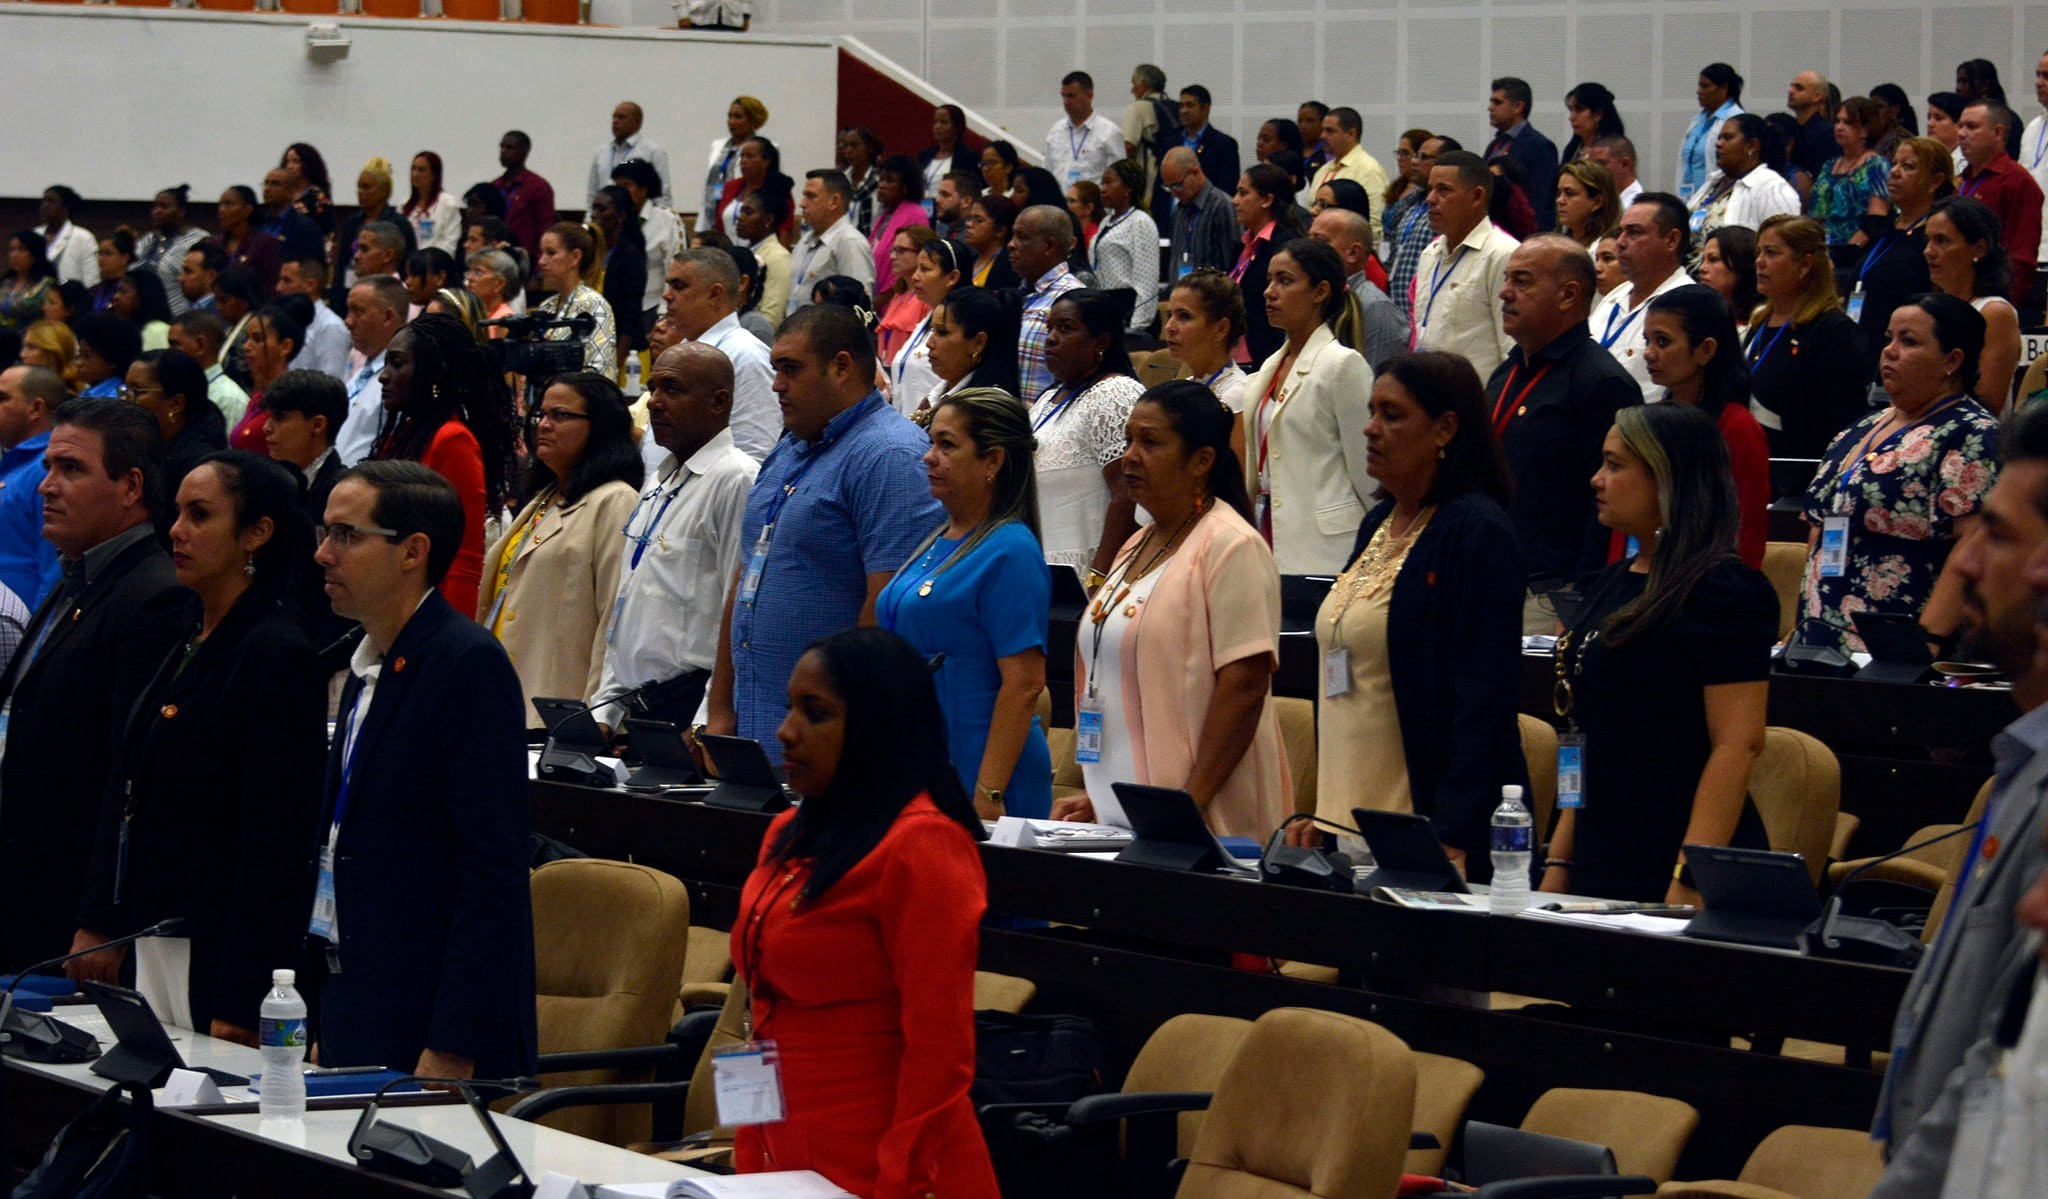 Quốc hội chính quyền nhân dân Cuba dành một phút mặc niệm Tổng bí thư Nguyễn Phú Trọng trong phiên họp ngày 19/7 - Ảnh: FACEBOOK ĐẠI SỨ QUÁN CUBA